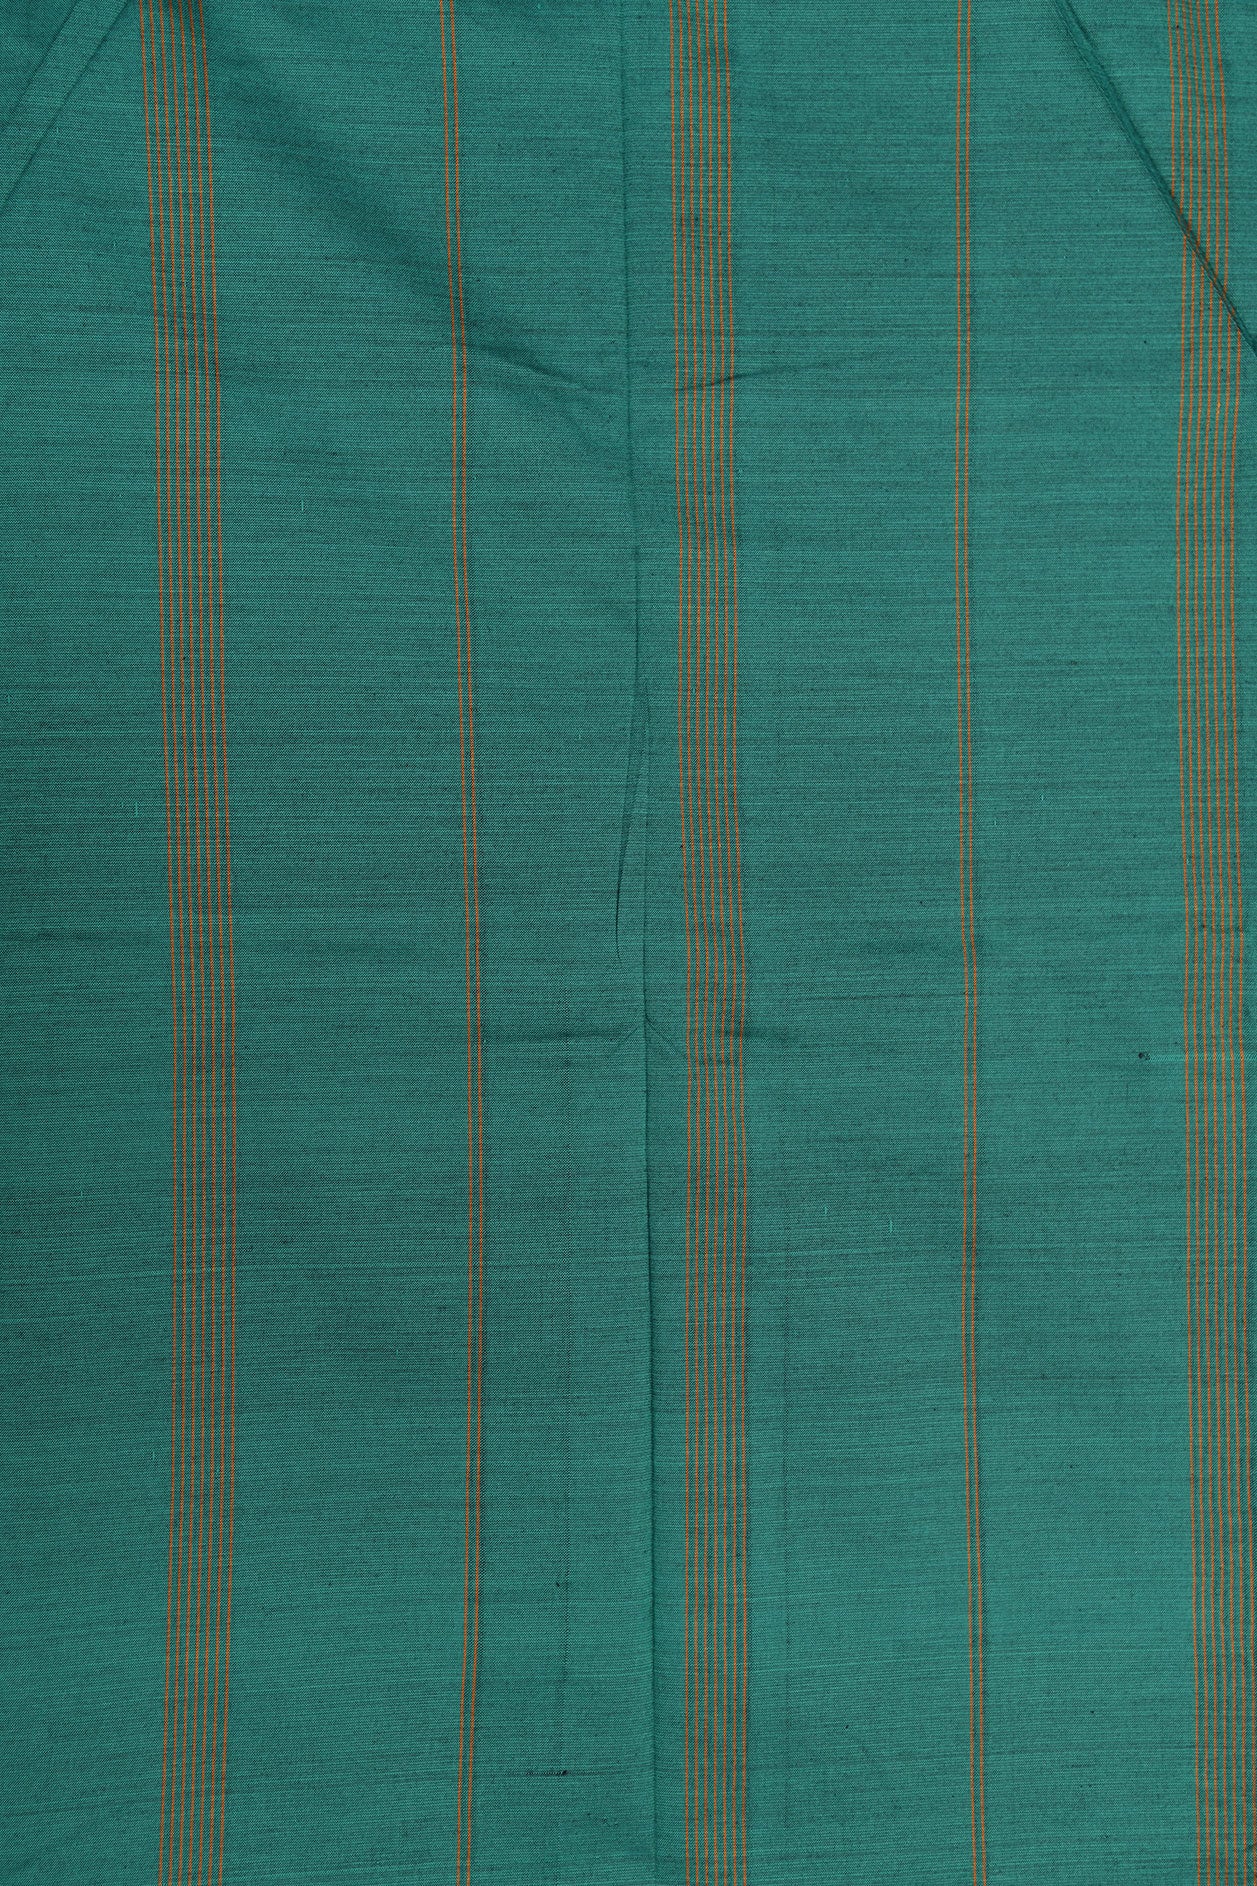 Thread Work Stripes Border In Plain Violet Dharwad Cotton Saree